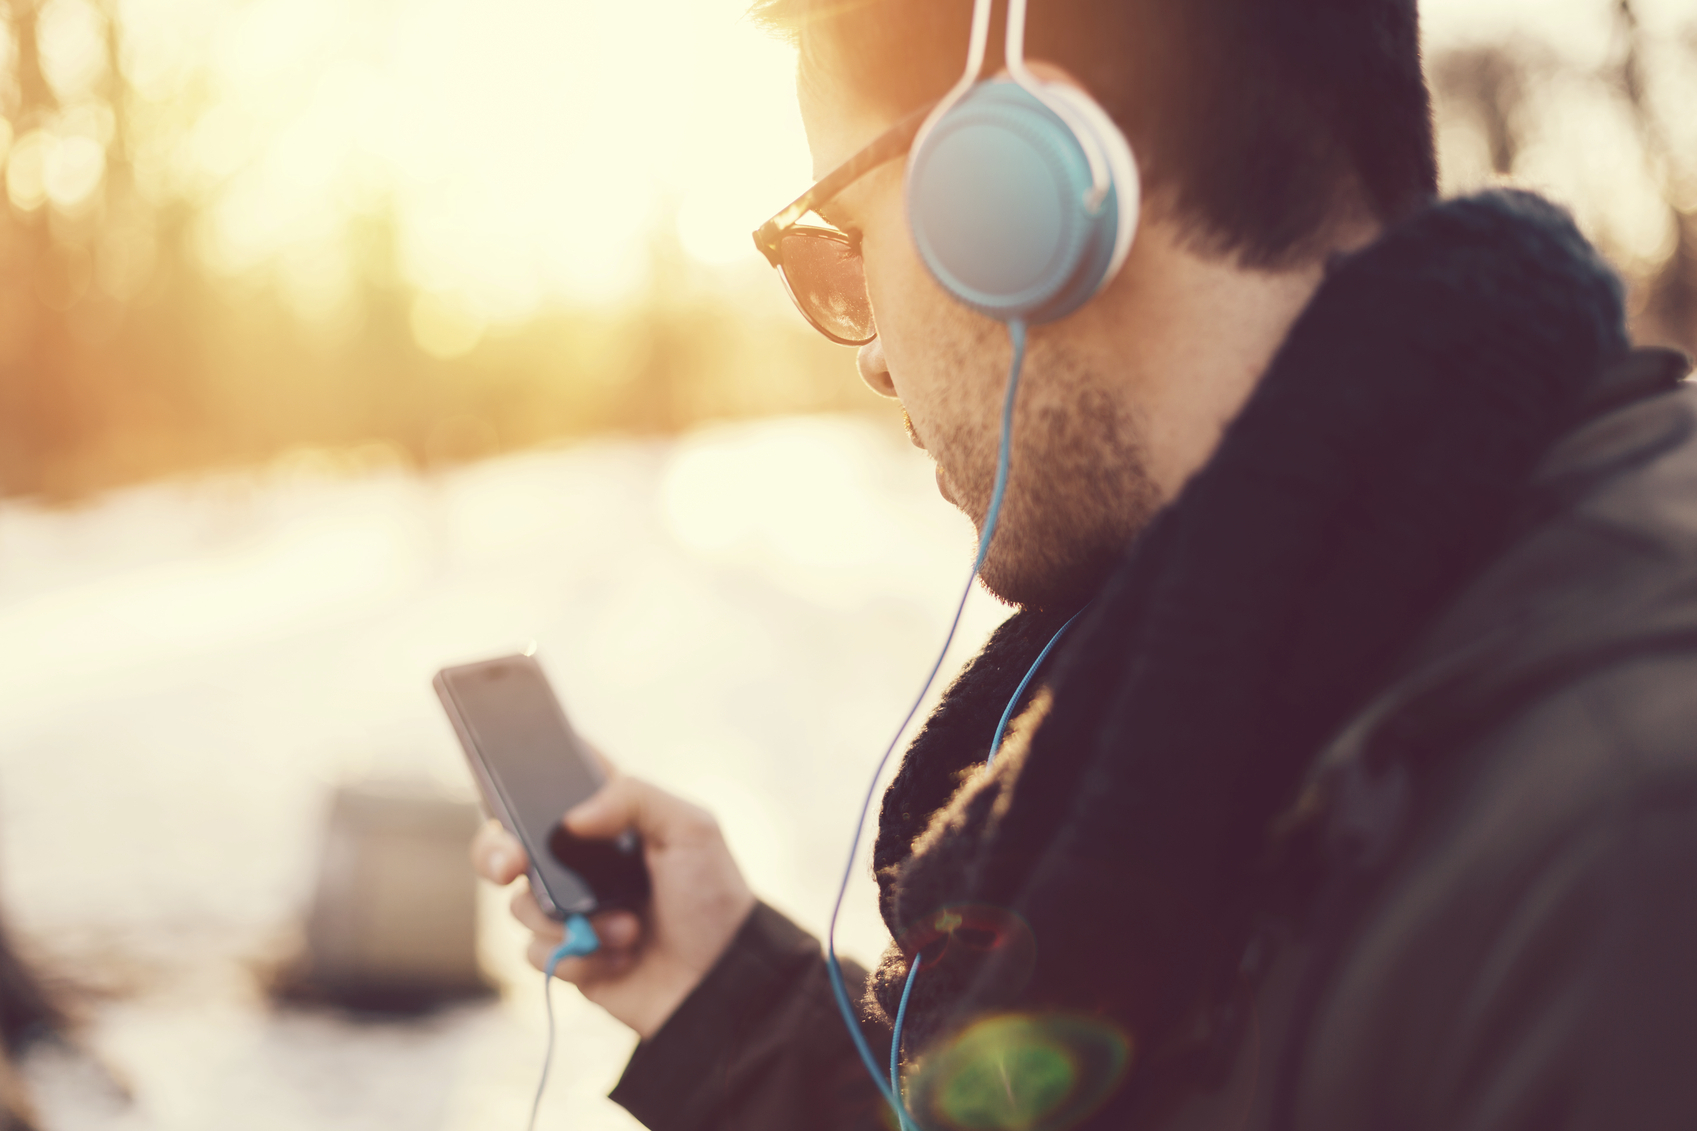 « Un jeune sur deux écoute des sons à des niveaux nuisibles en utilisant son appareil audio personnel », et risque à terme de souffrir de pertes auditives, selon l'OMS. © Martin Dimitrov/Istock.com